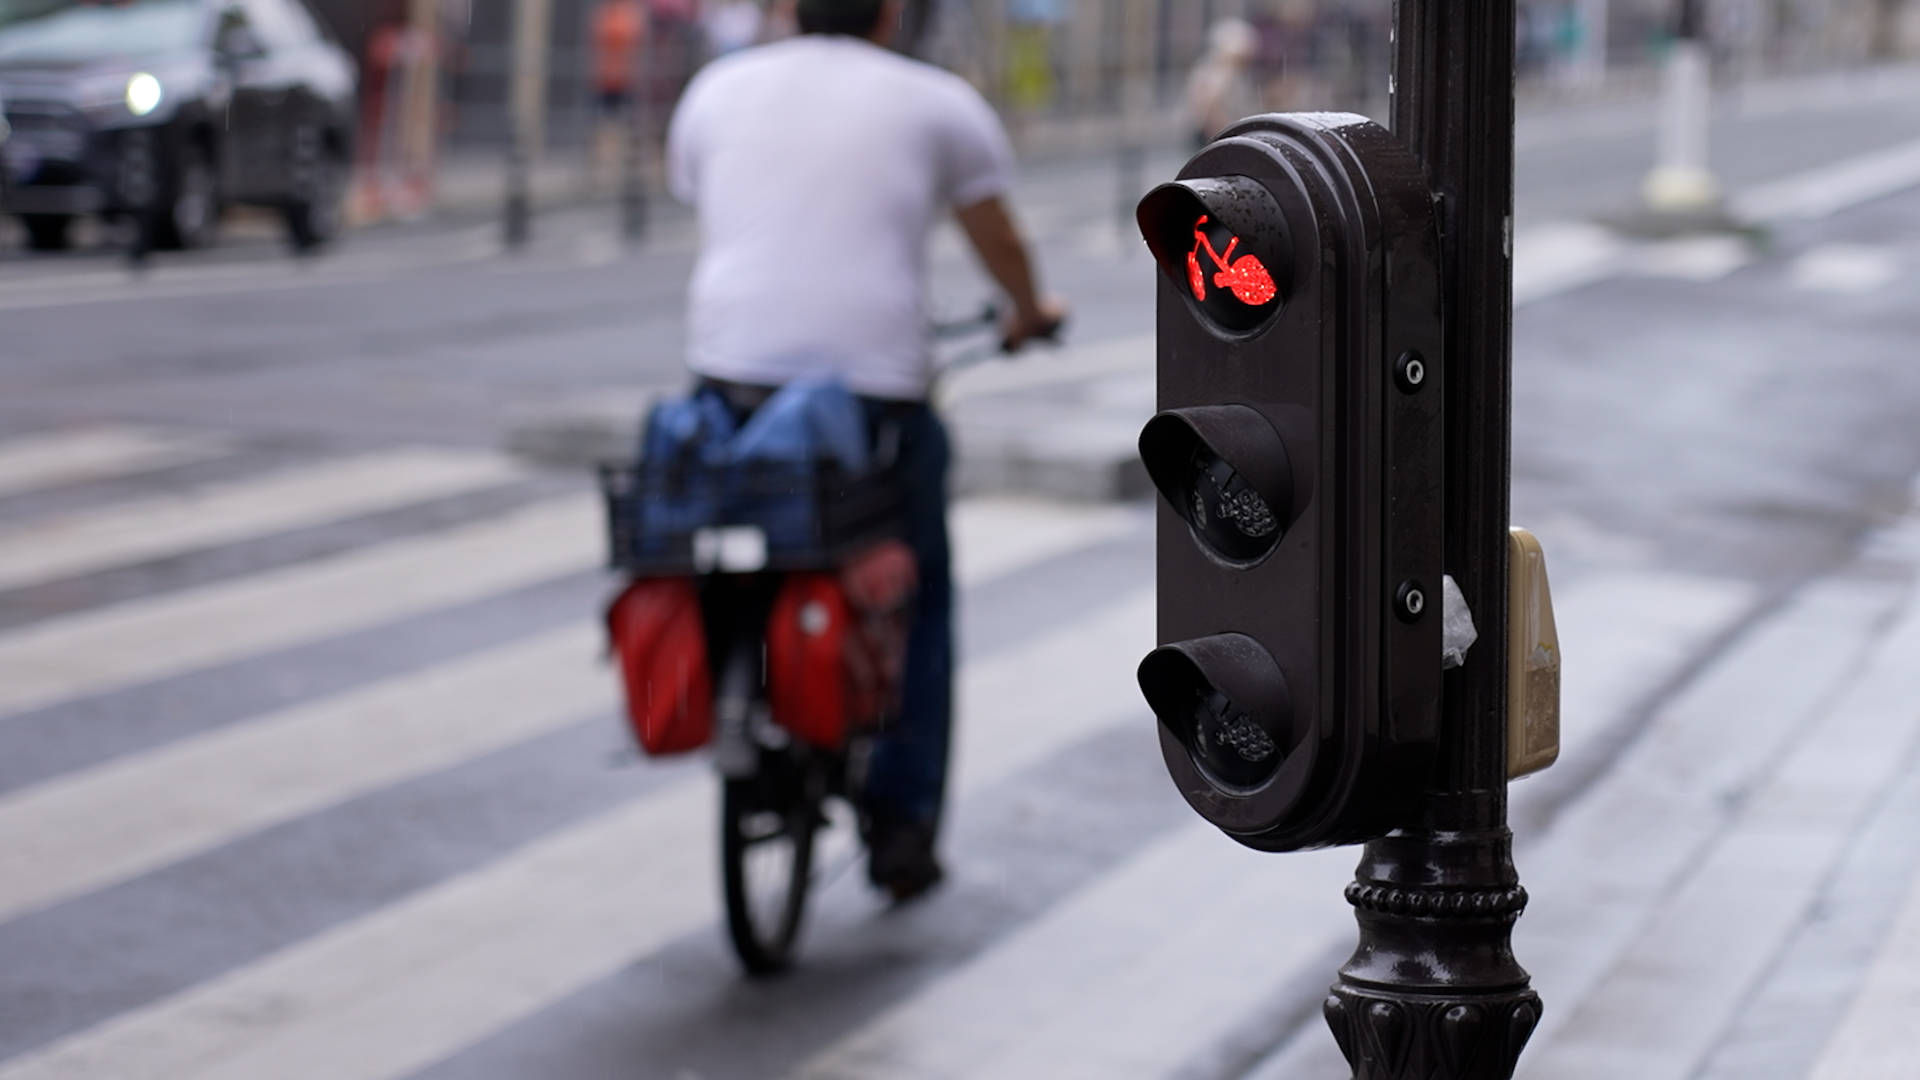 Au moins 38% des cyclistes Français sont déjà passés au rouge, dans une situation où cela leur était totalement interdit, selon une enquête Ipsos menée en 2022.